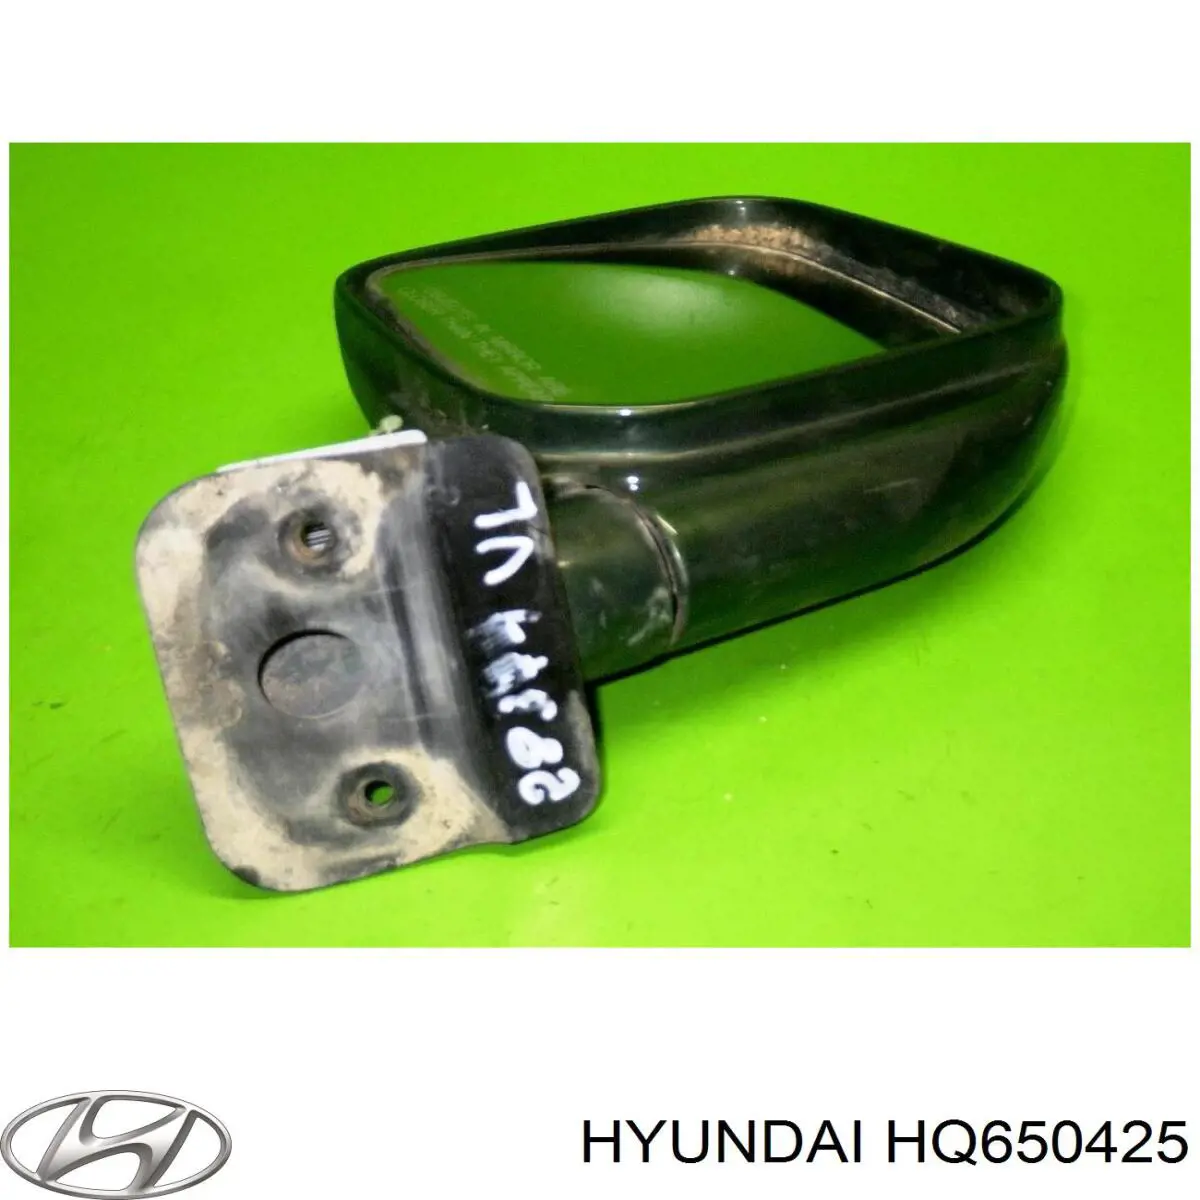 HQ650425 Hyundai/Kia espelho de retrovisão esquerdo